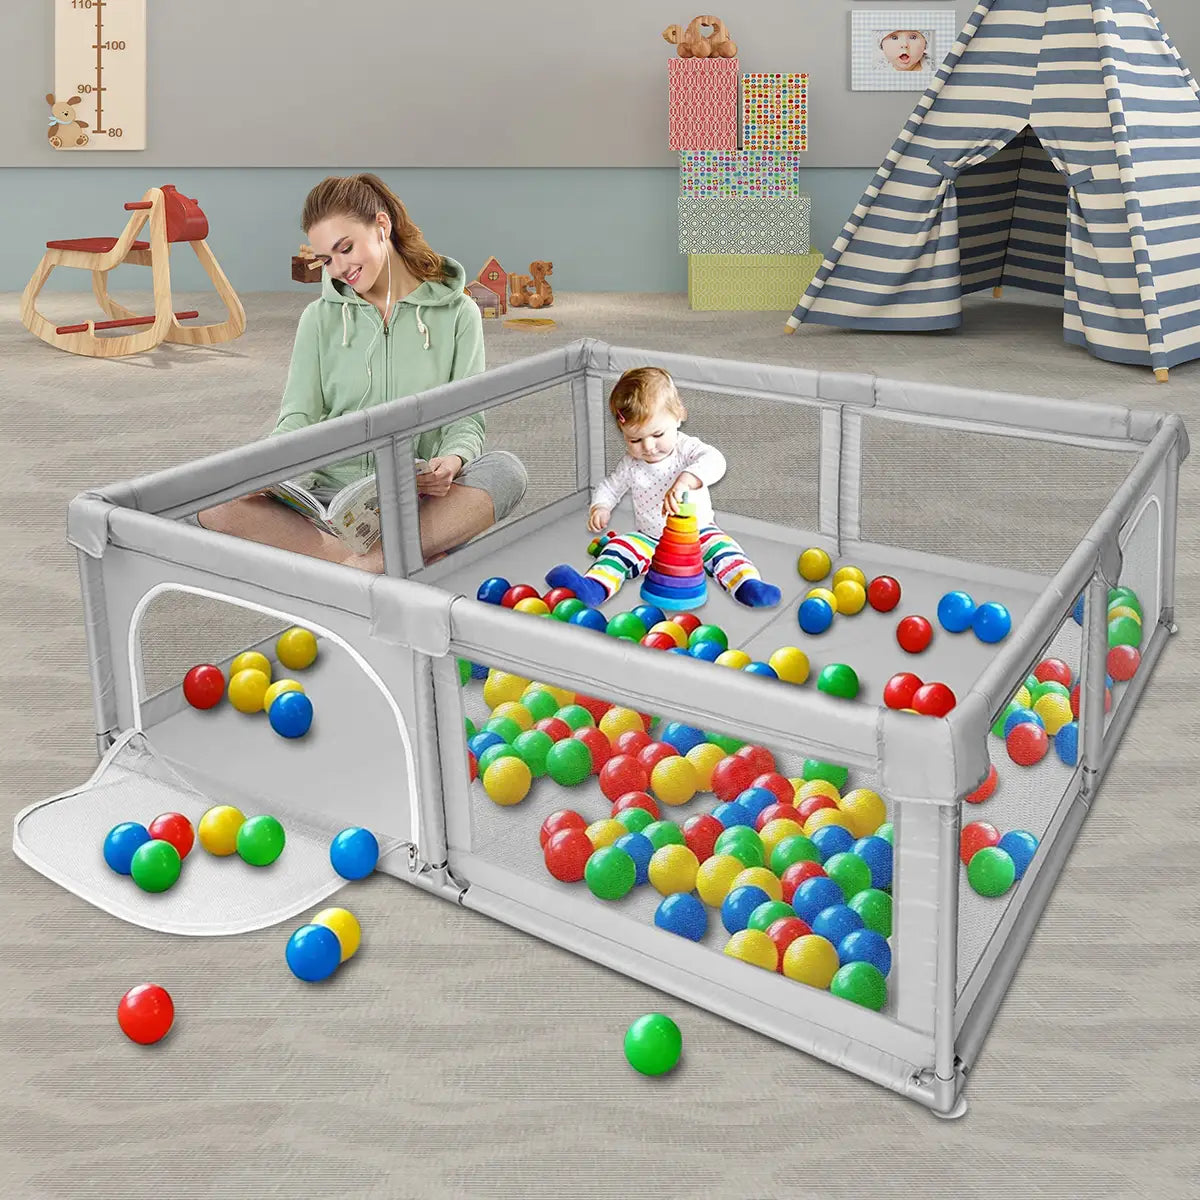 Bioby Baby Playpen 360 Wide View Children Playground Safety